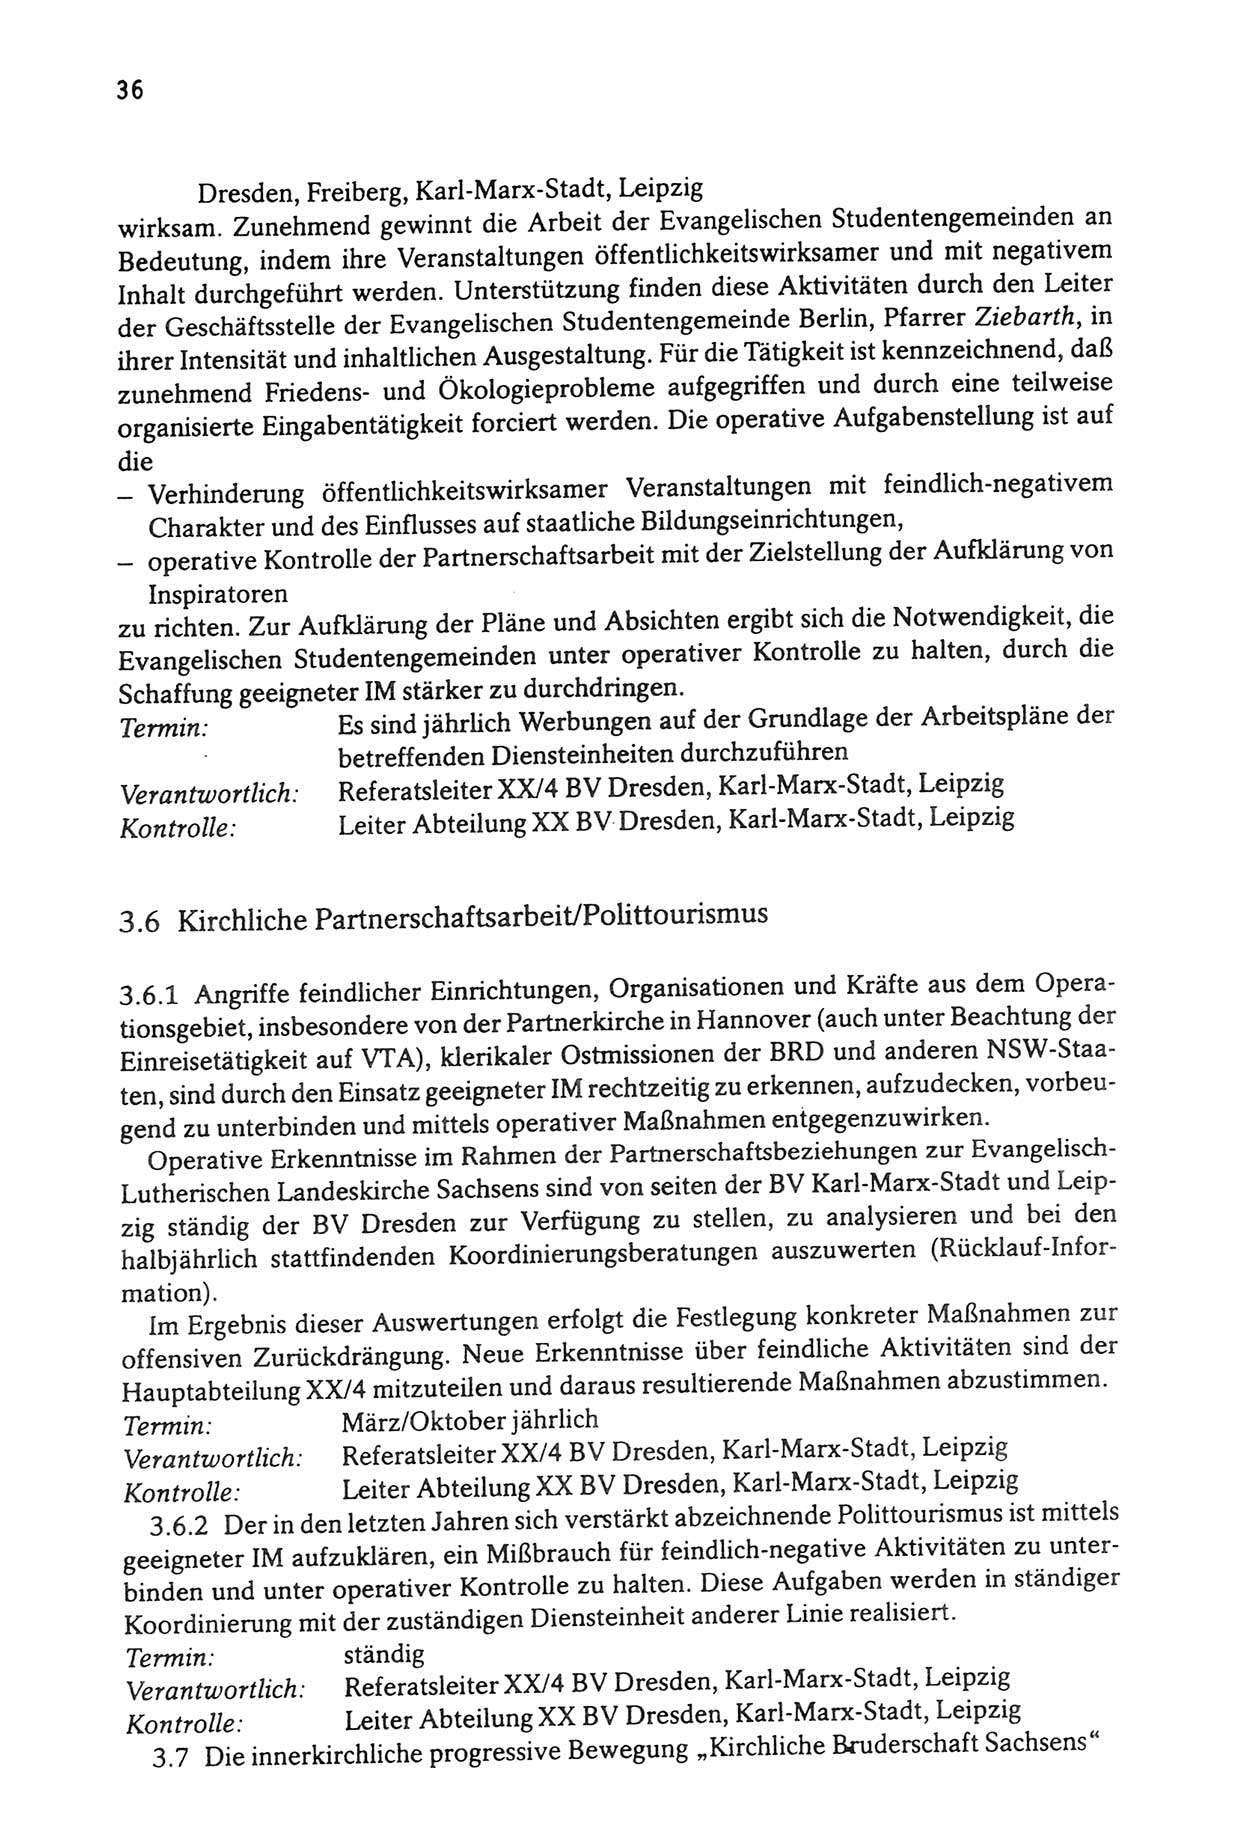 Zwie-Gespräch, Beiträge zur Aufarbeitung der Stasi-Vergangenheit [Deutsche Demokratische Republik (DDR)], Ausgabe Nr. 3, Berlin 1991, Seite 36 (Zwie-Gespr. Ausg. 3 1991, S. 36)